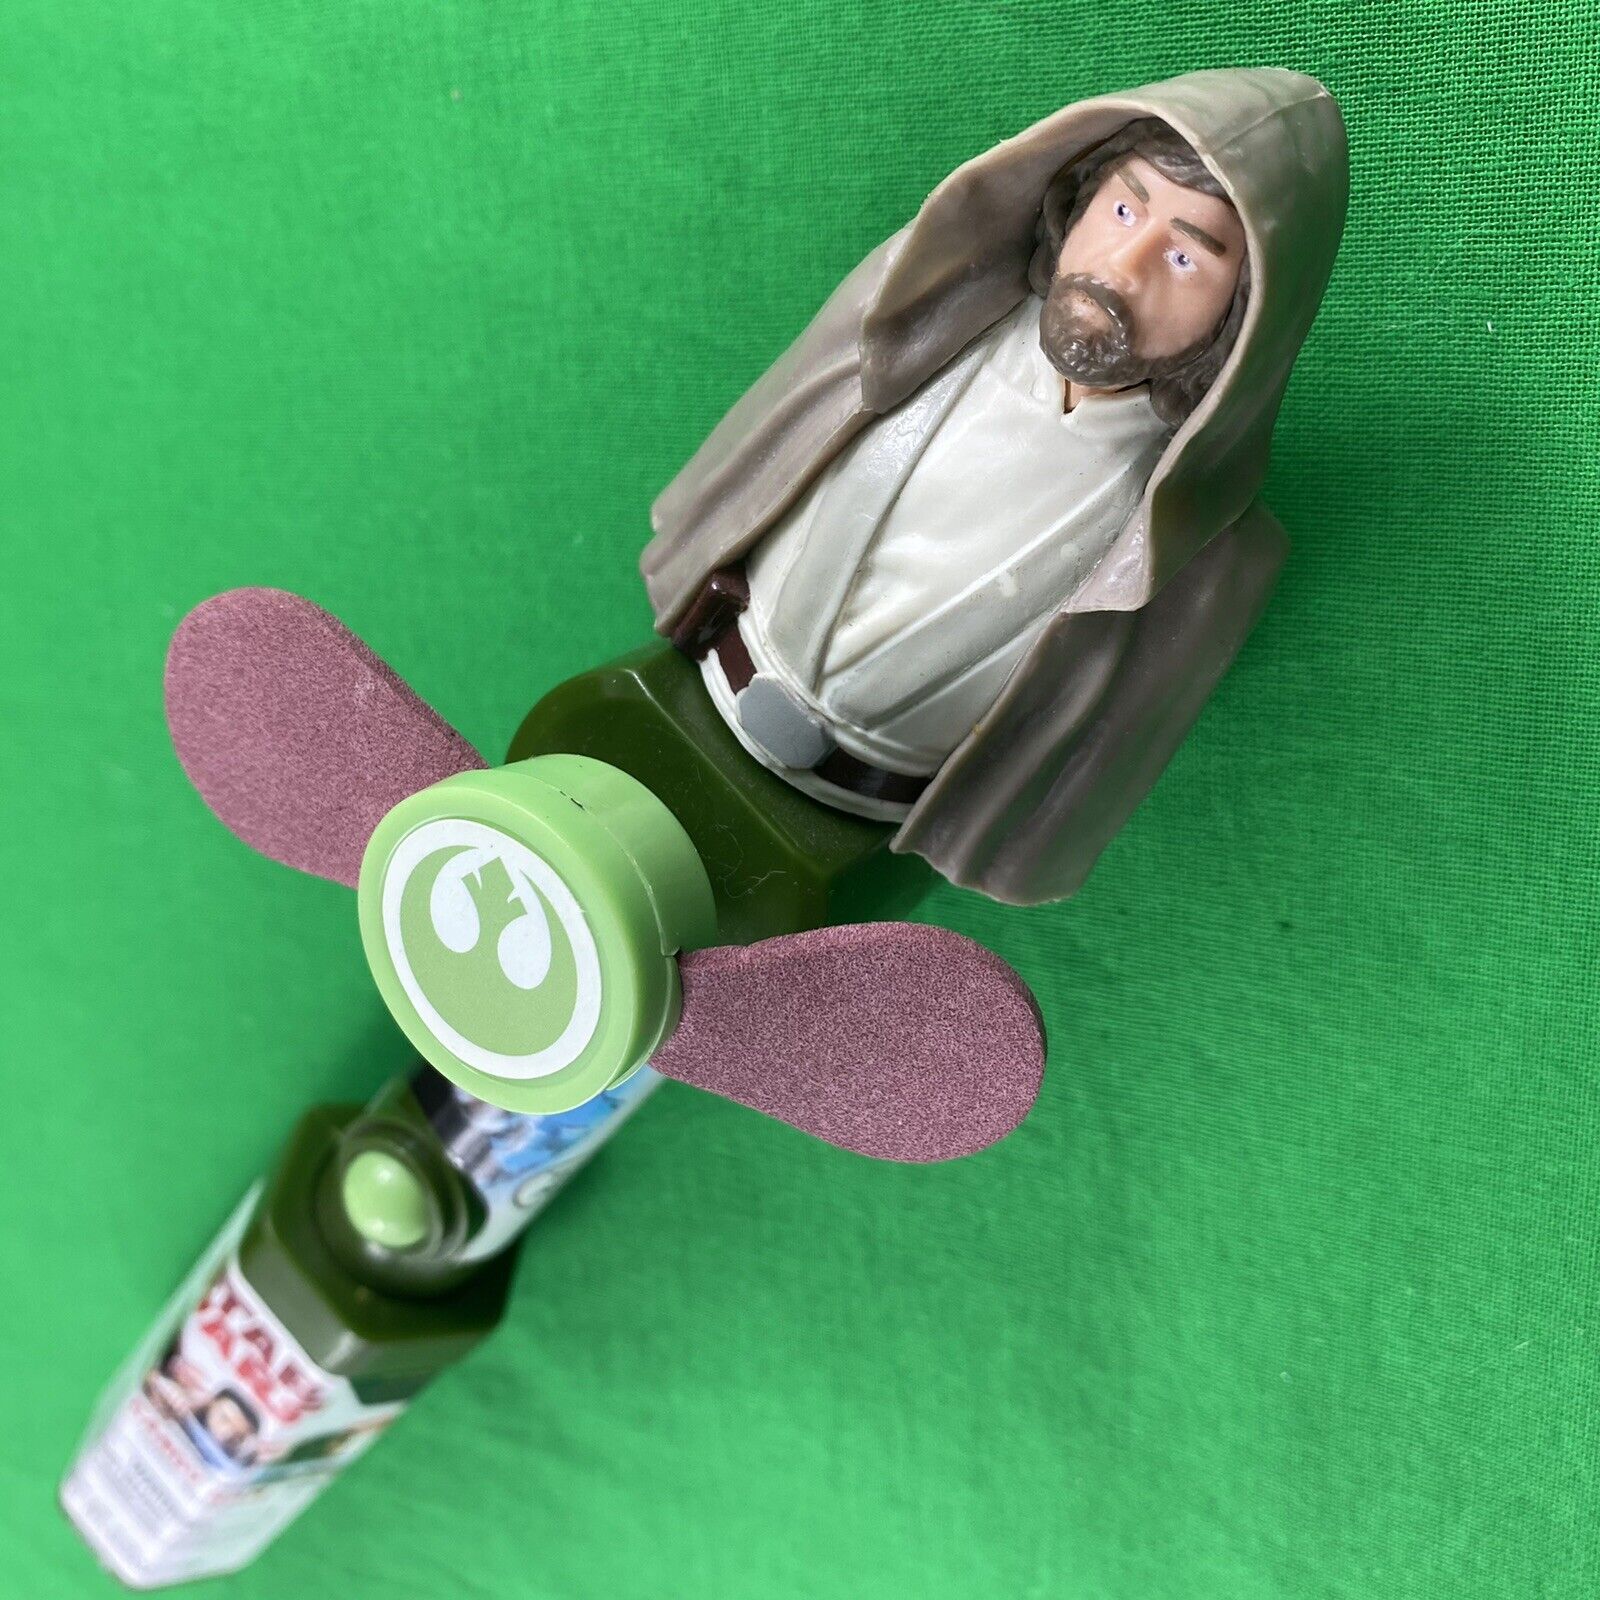 Luke Skywalker Unopened Candy Fan Star Wars Ep VIII The Last Jedi Factory Sealed